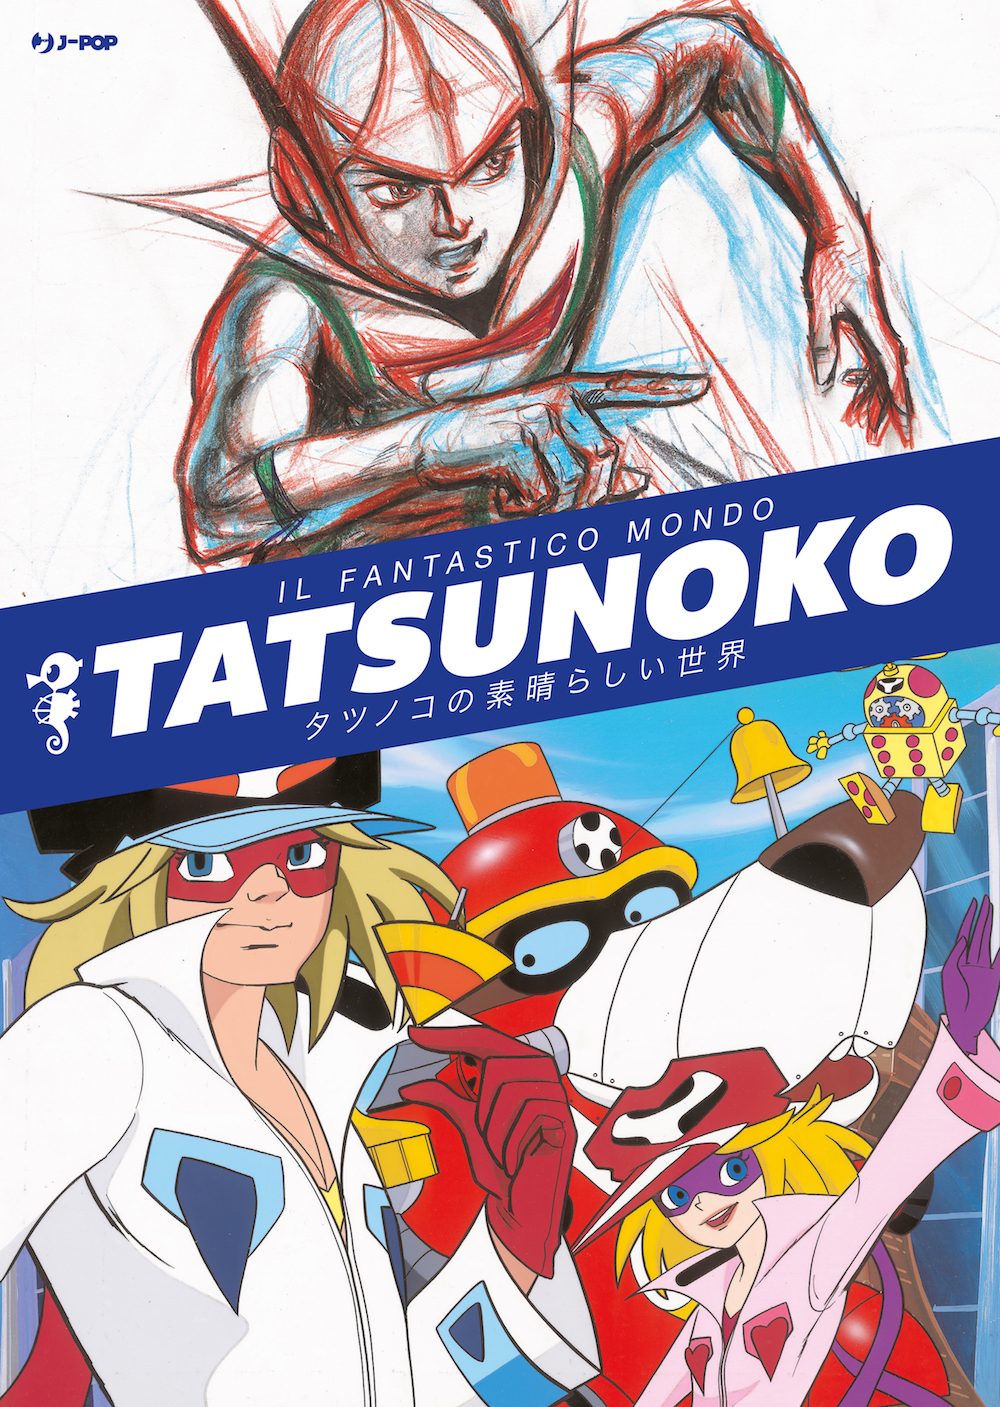 Il fantastico mondo di Tatsunoko